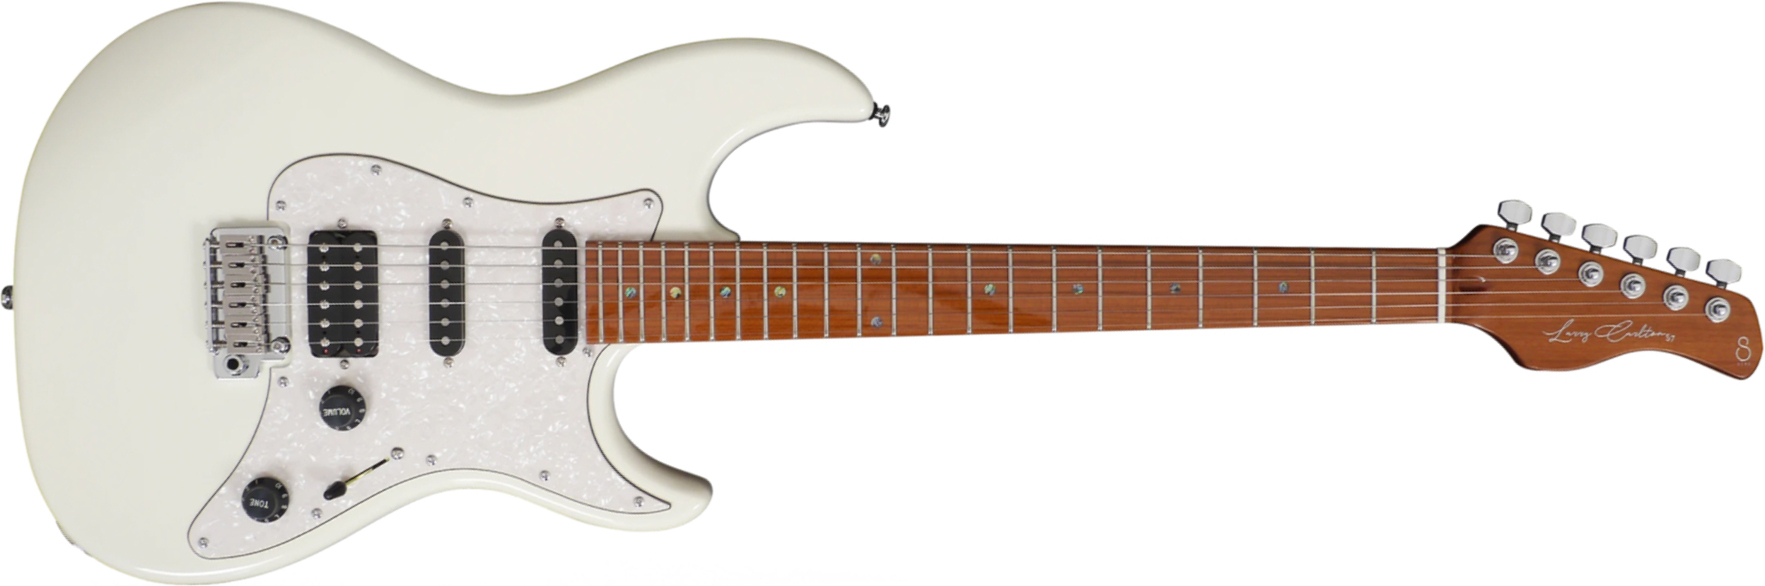 Sire Larry Carlton S7 Signature Hss Trem Mn - Antique White - Guitarra eléctrica con forma de str. - Main picture